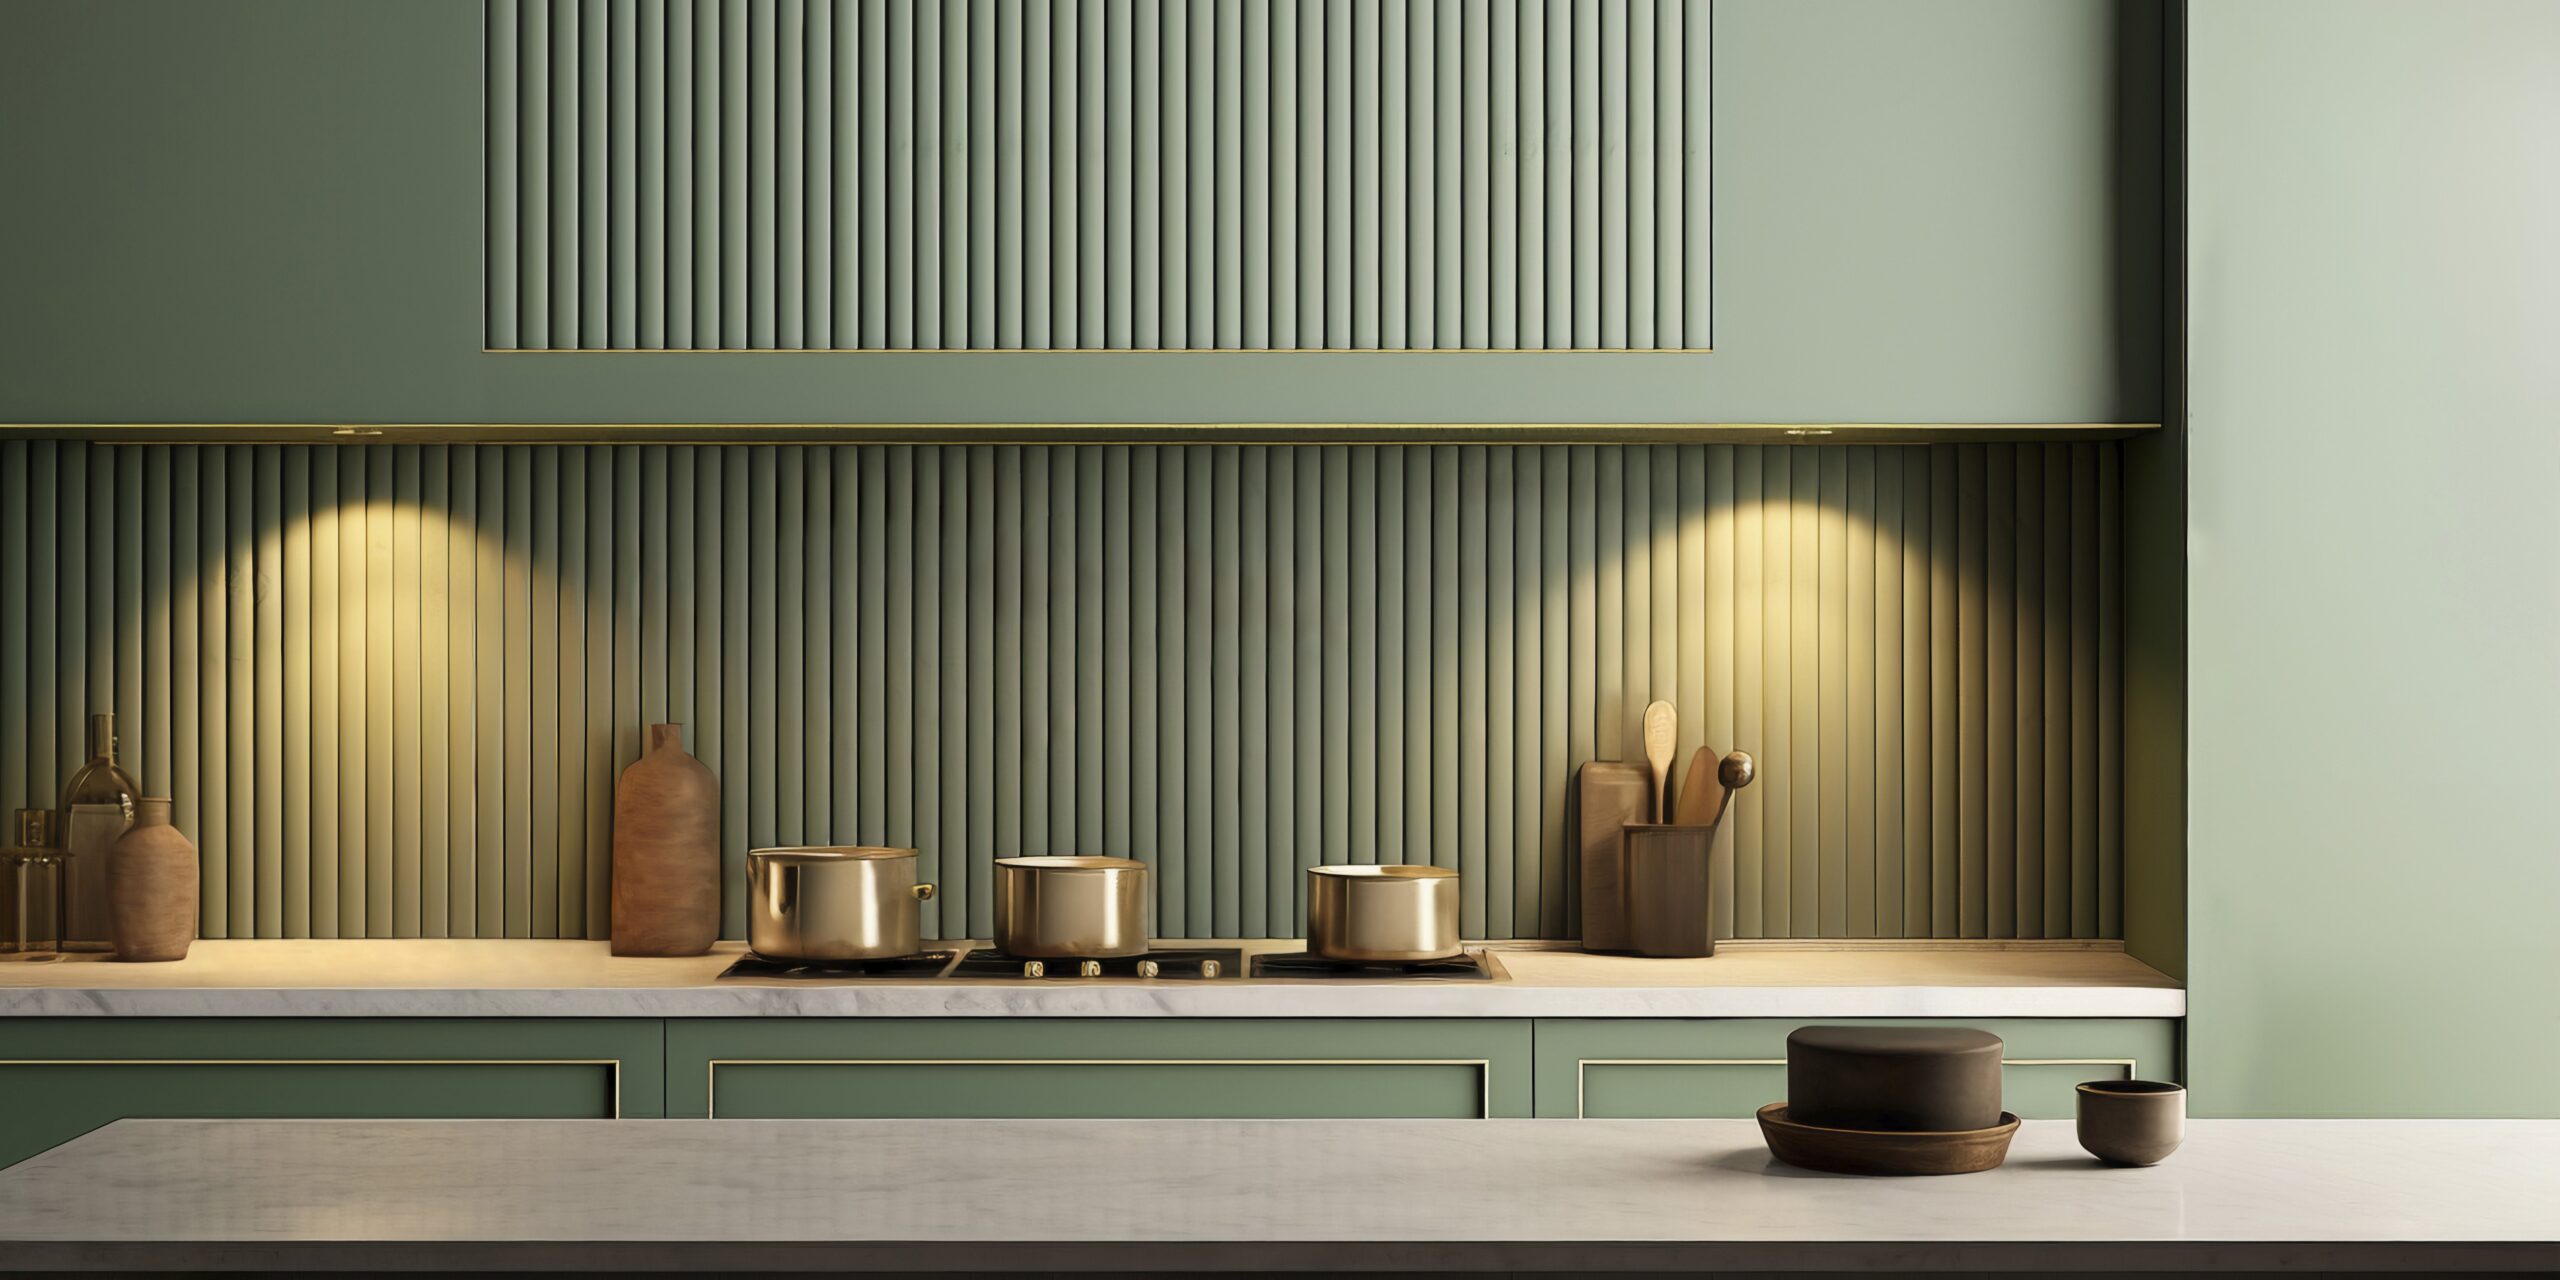 minimalist kitchen interior design scaled